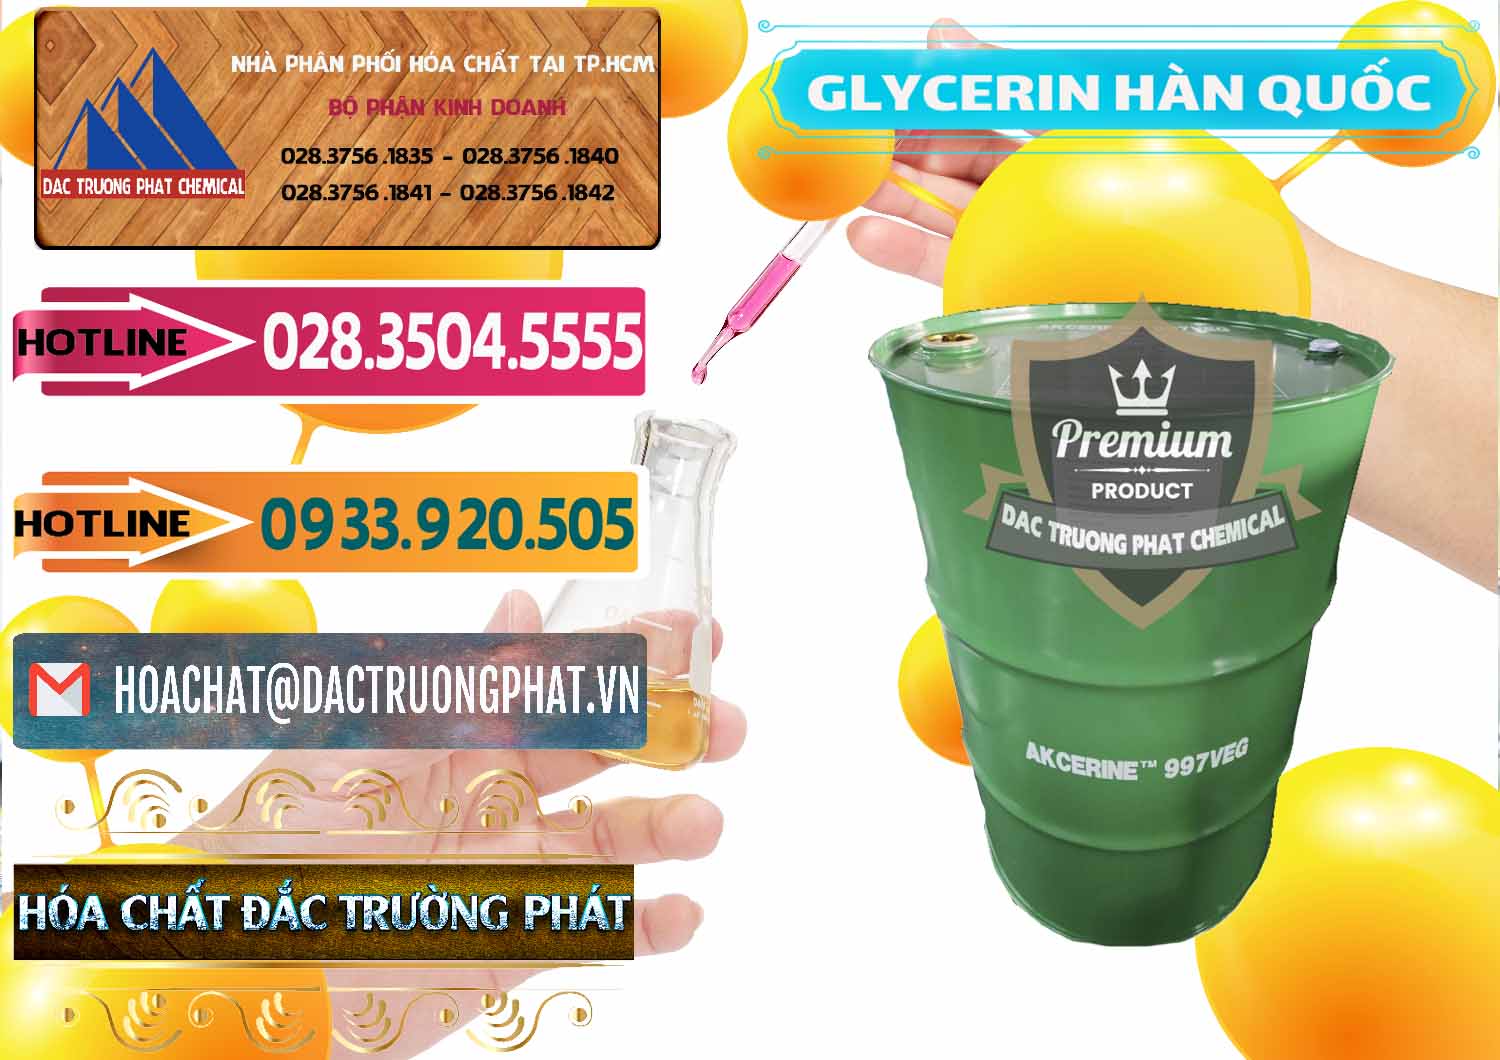 Cty bán _ phân phối Glycerin – C3H8O3 Hàn Quốc Korea - 0403 - Công ty phân phối & cung ứng hóa chất tại TP.HCM - dactruongphat.vn